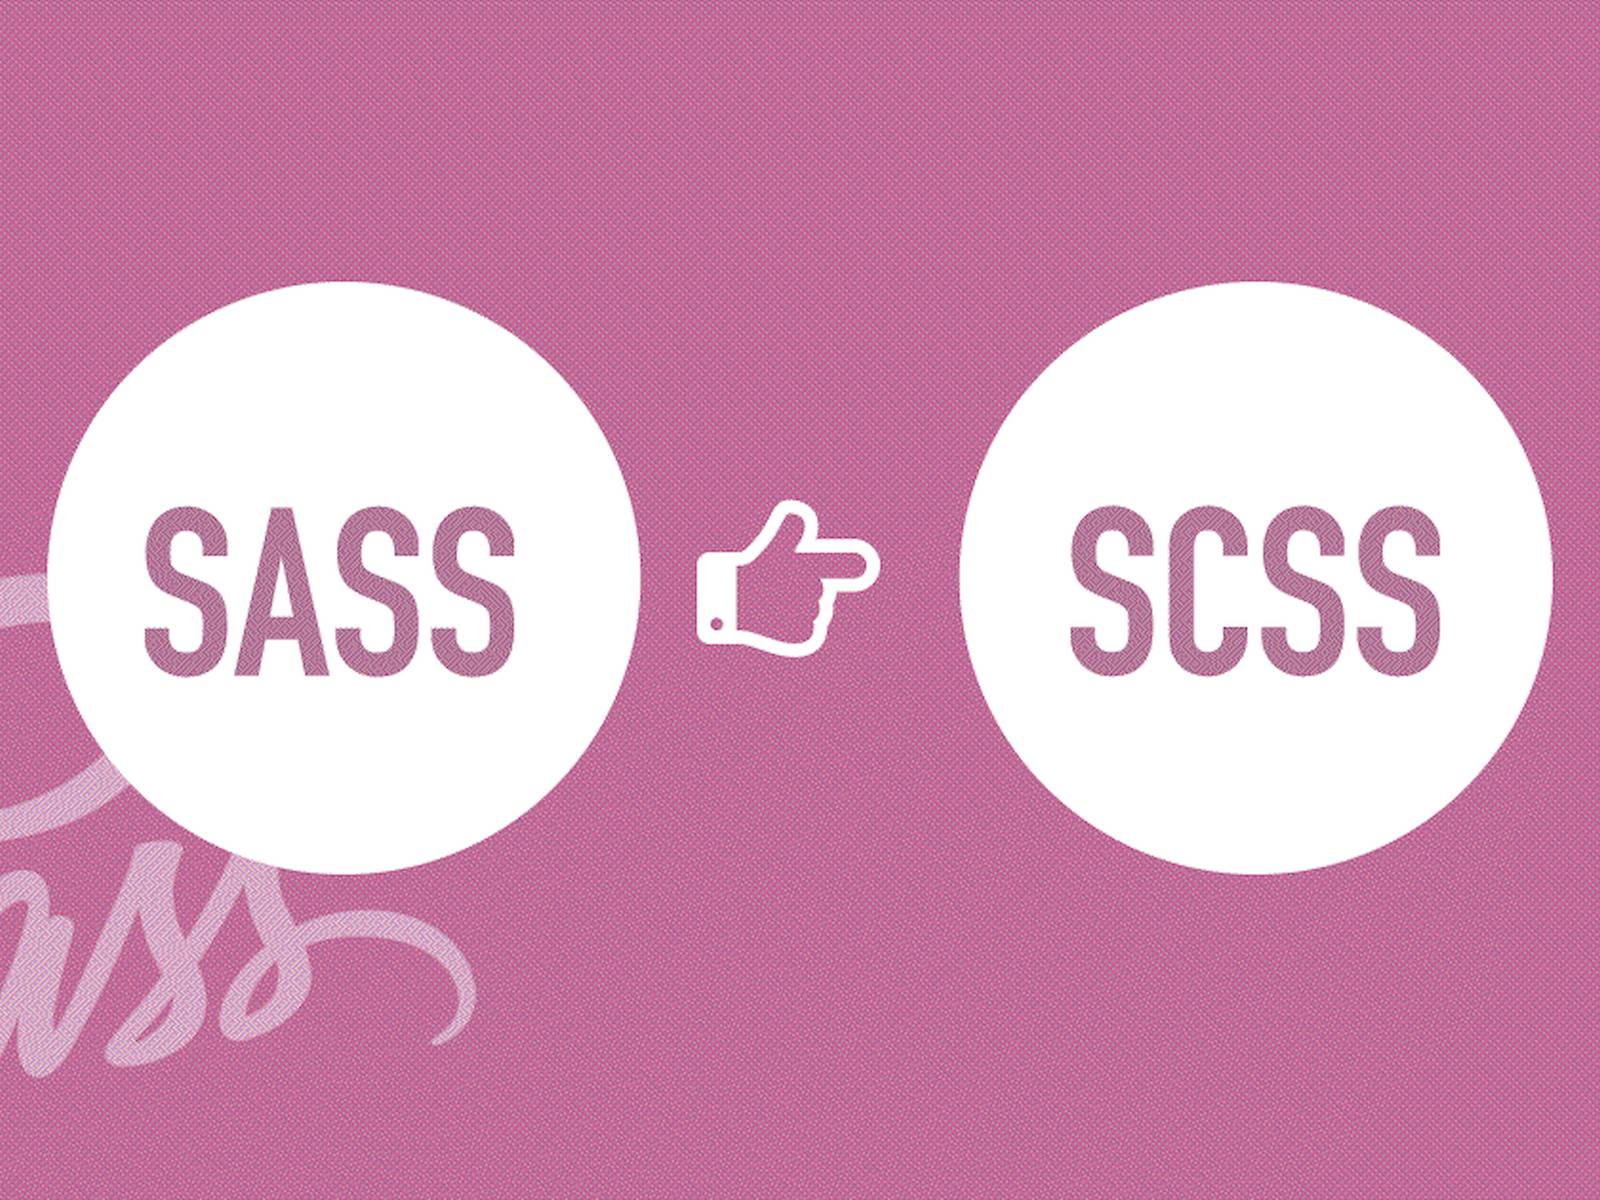 SASS/SCSS là gì